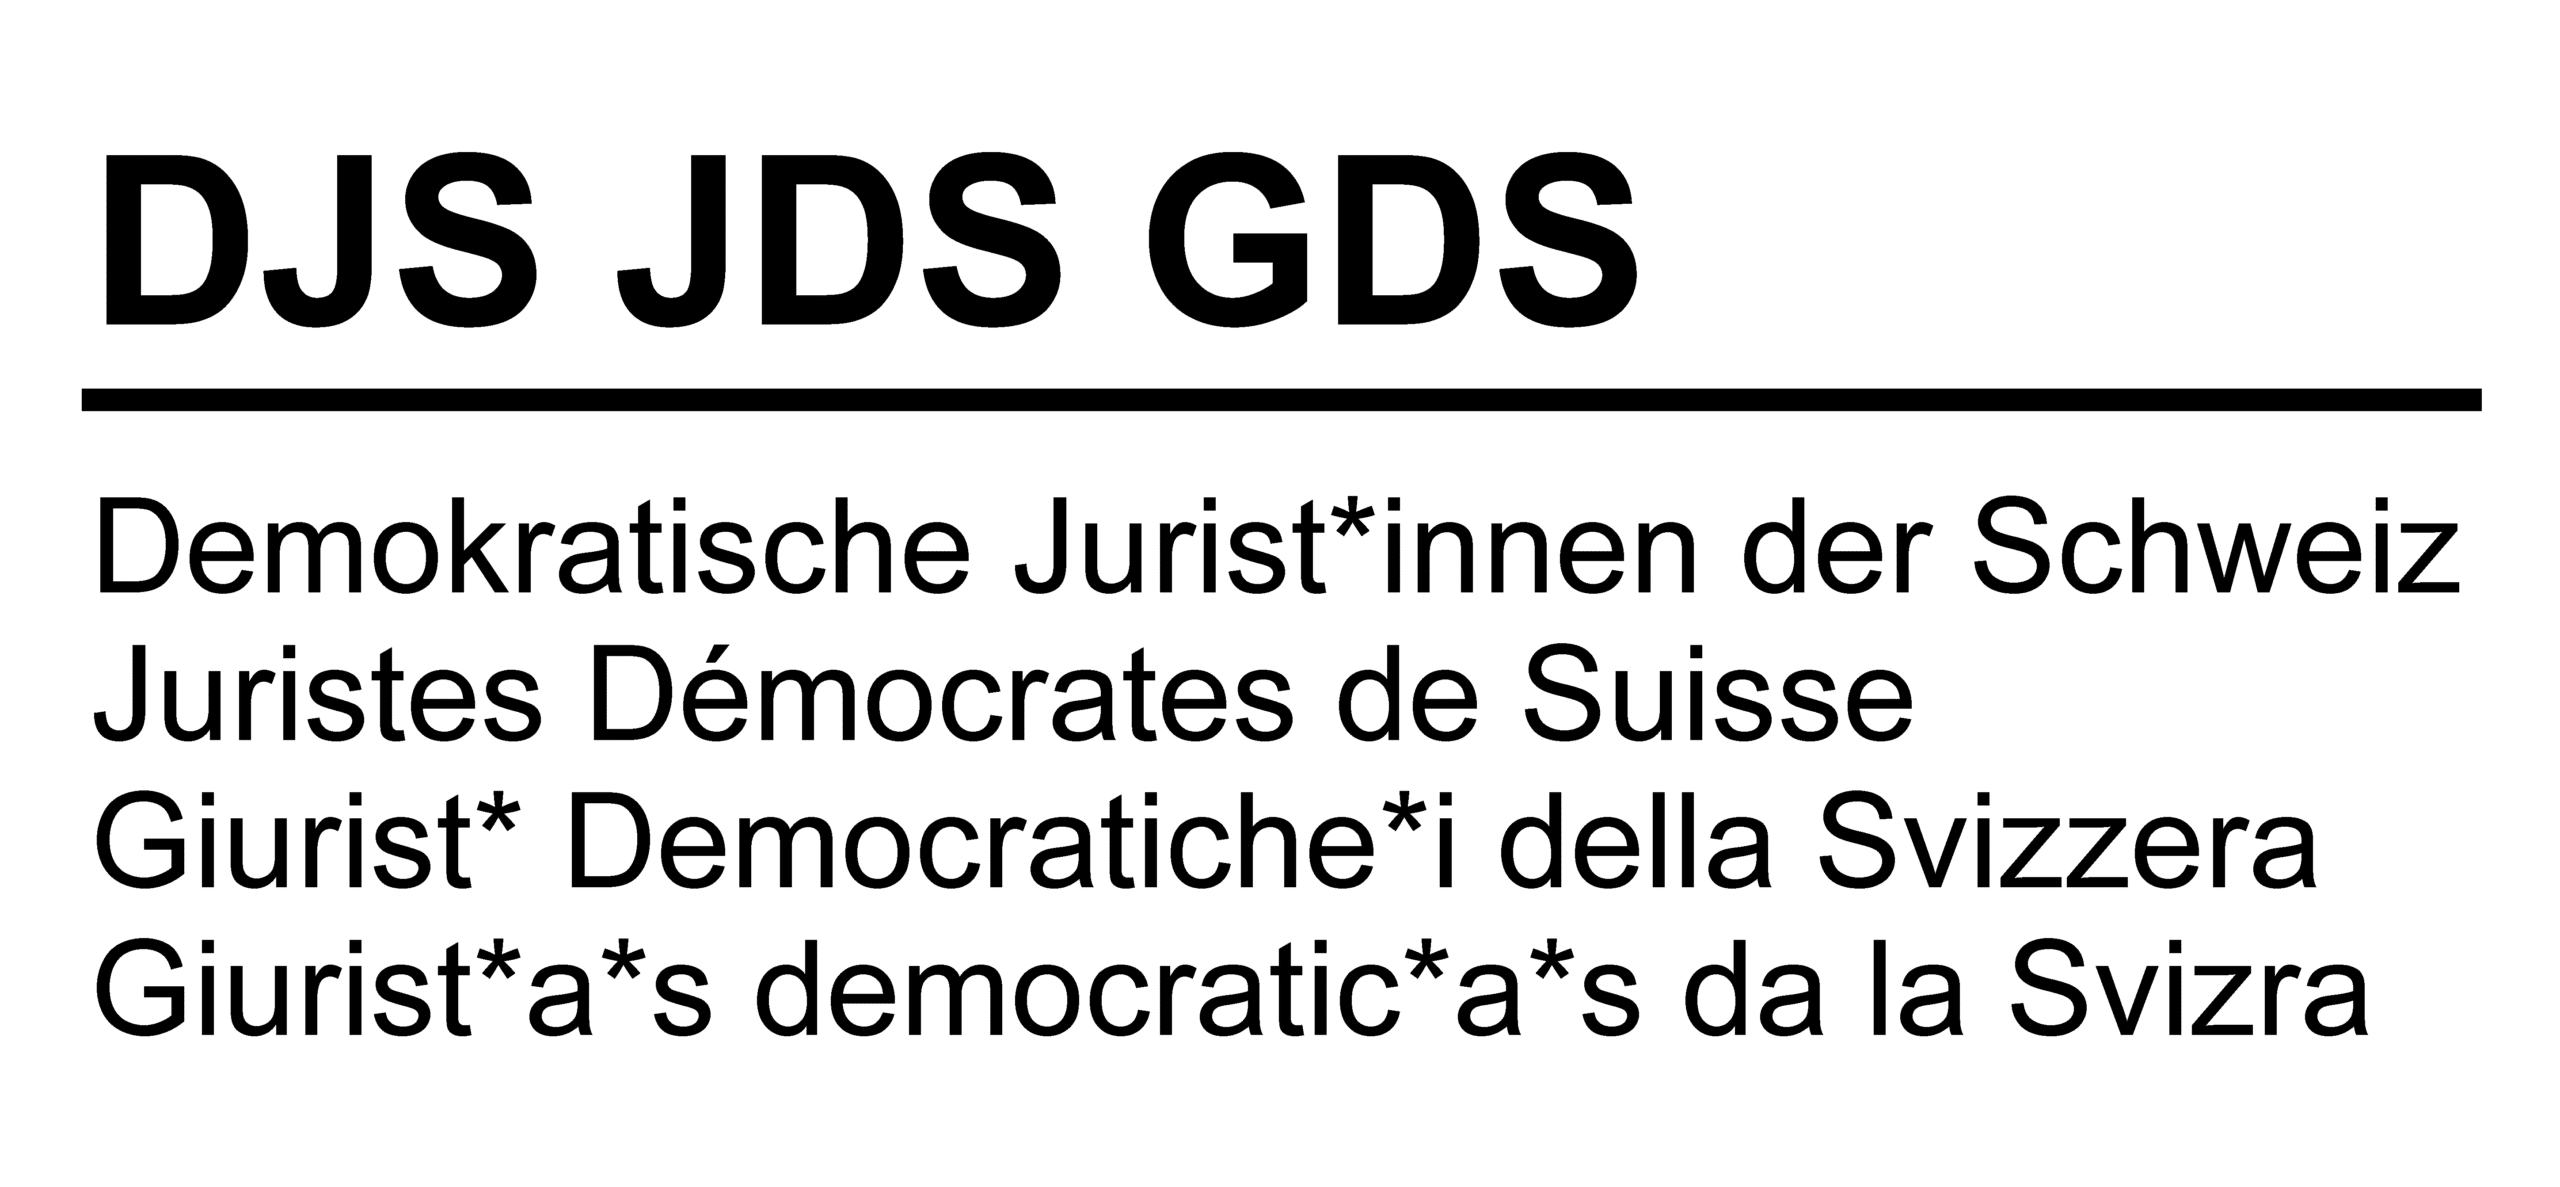 DJS JDS GDS